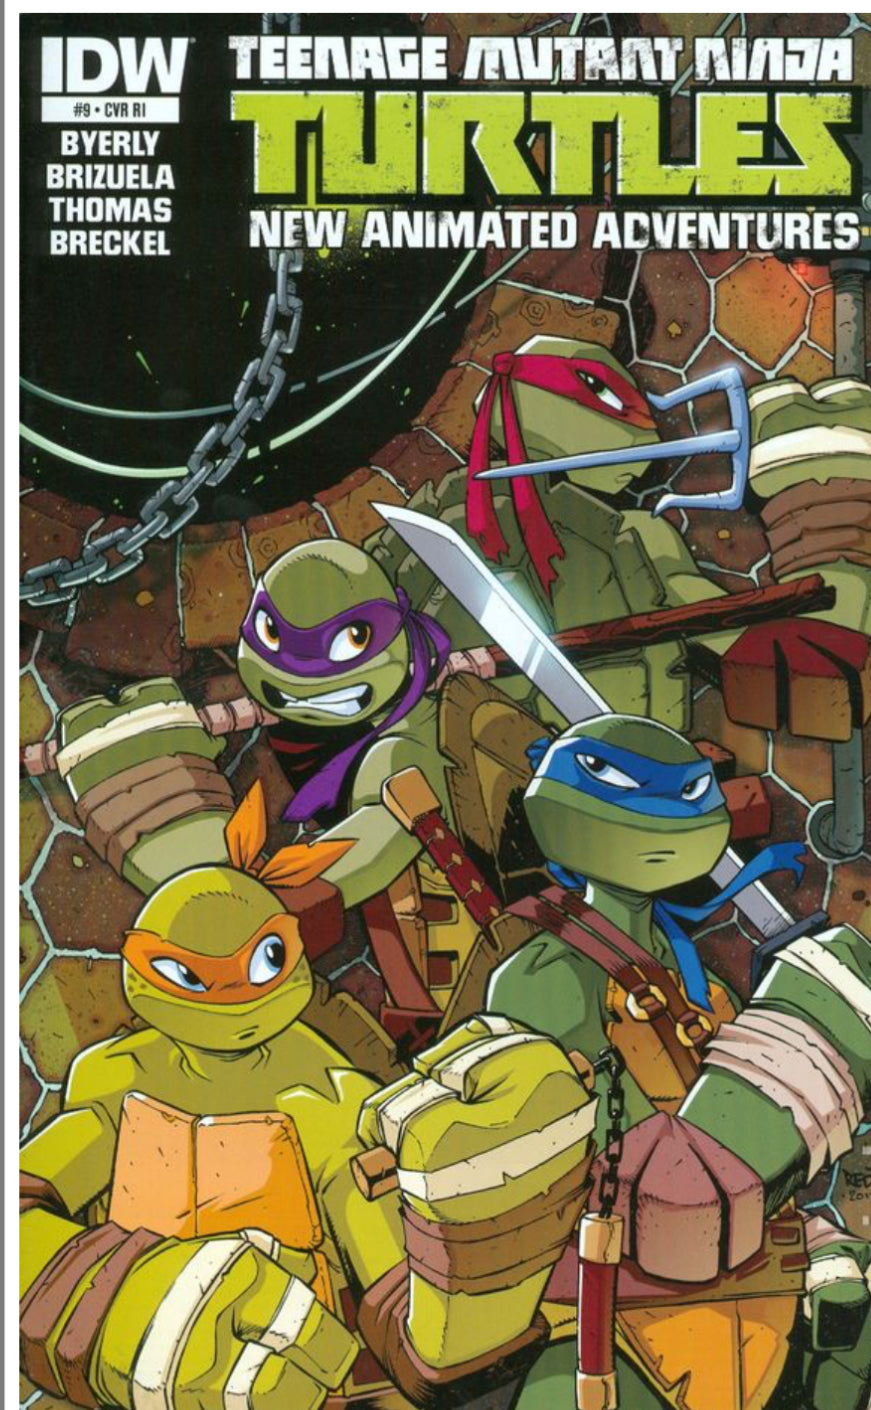 Teenage Mutant Ninja Turtles New Animated Adventures Vol. 1 (One of A Shadowbox Art)